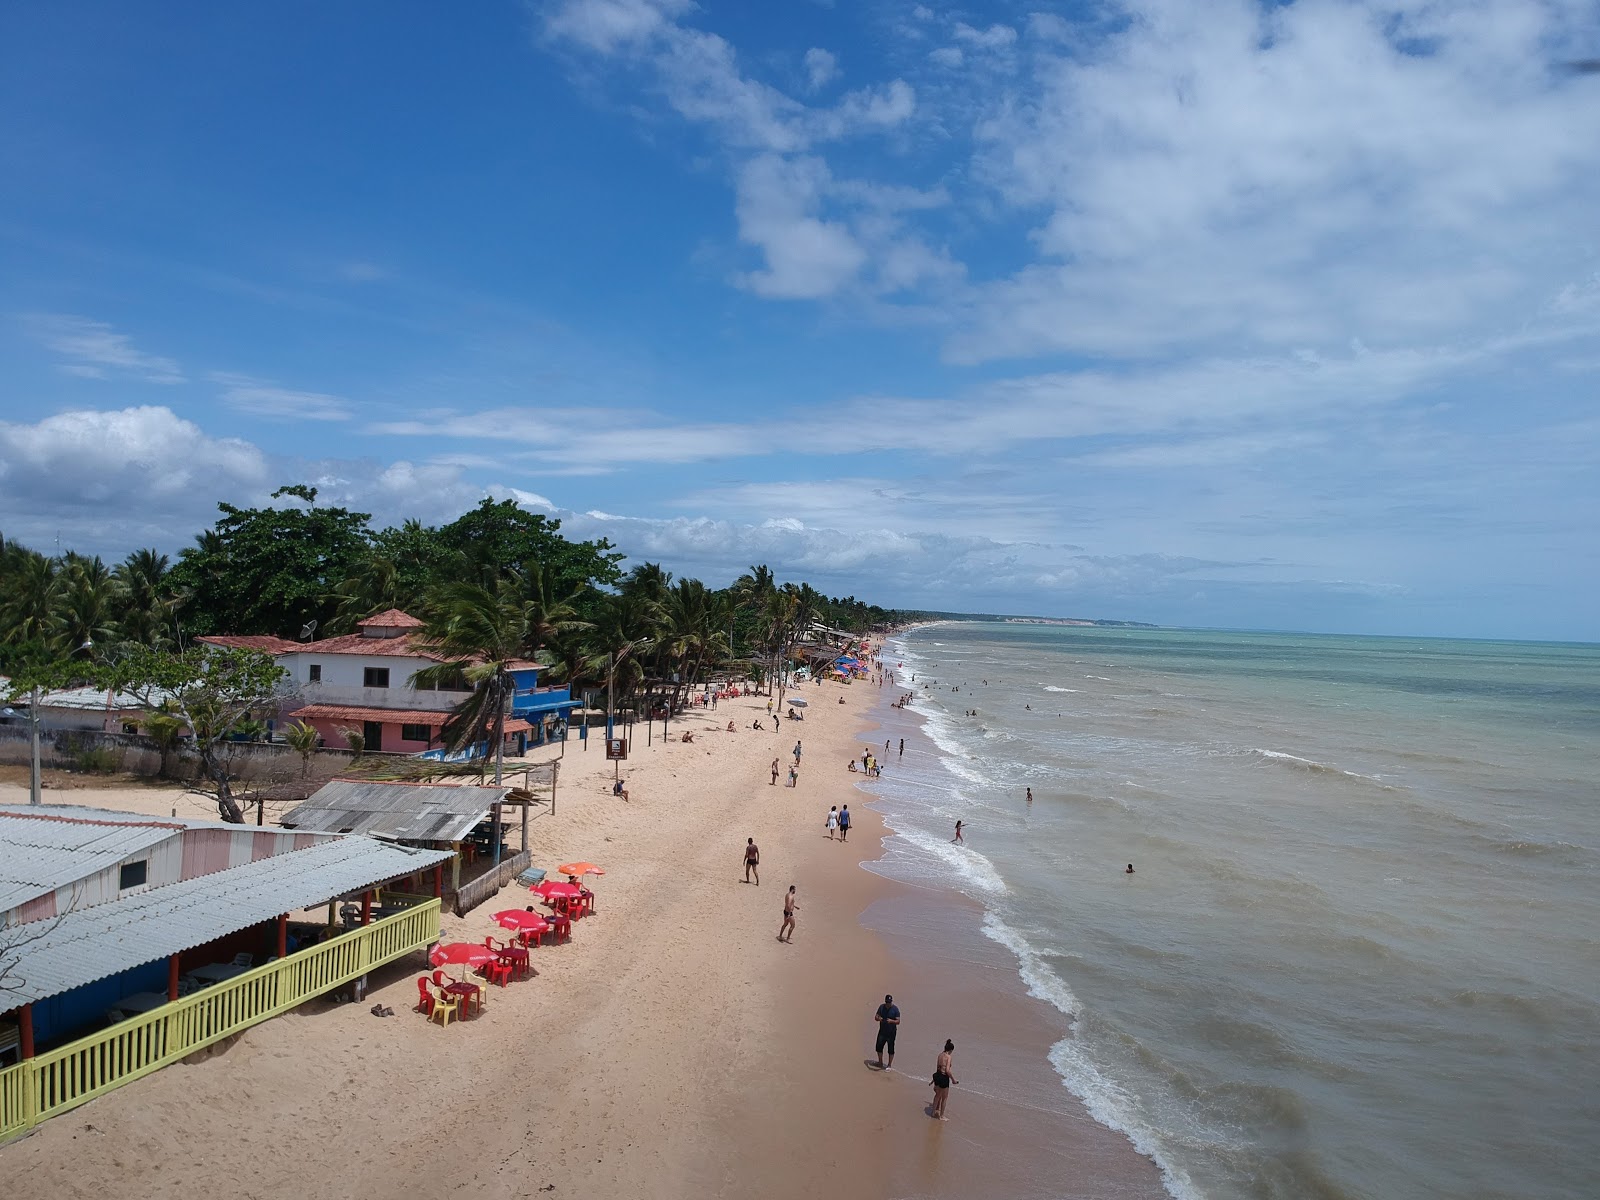 Centro Plajı'in fotoğrafı geniş plaj ile birlikte